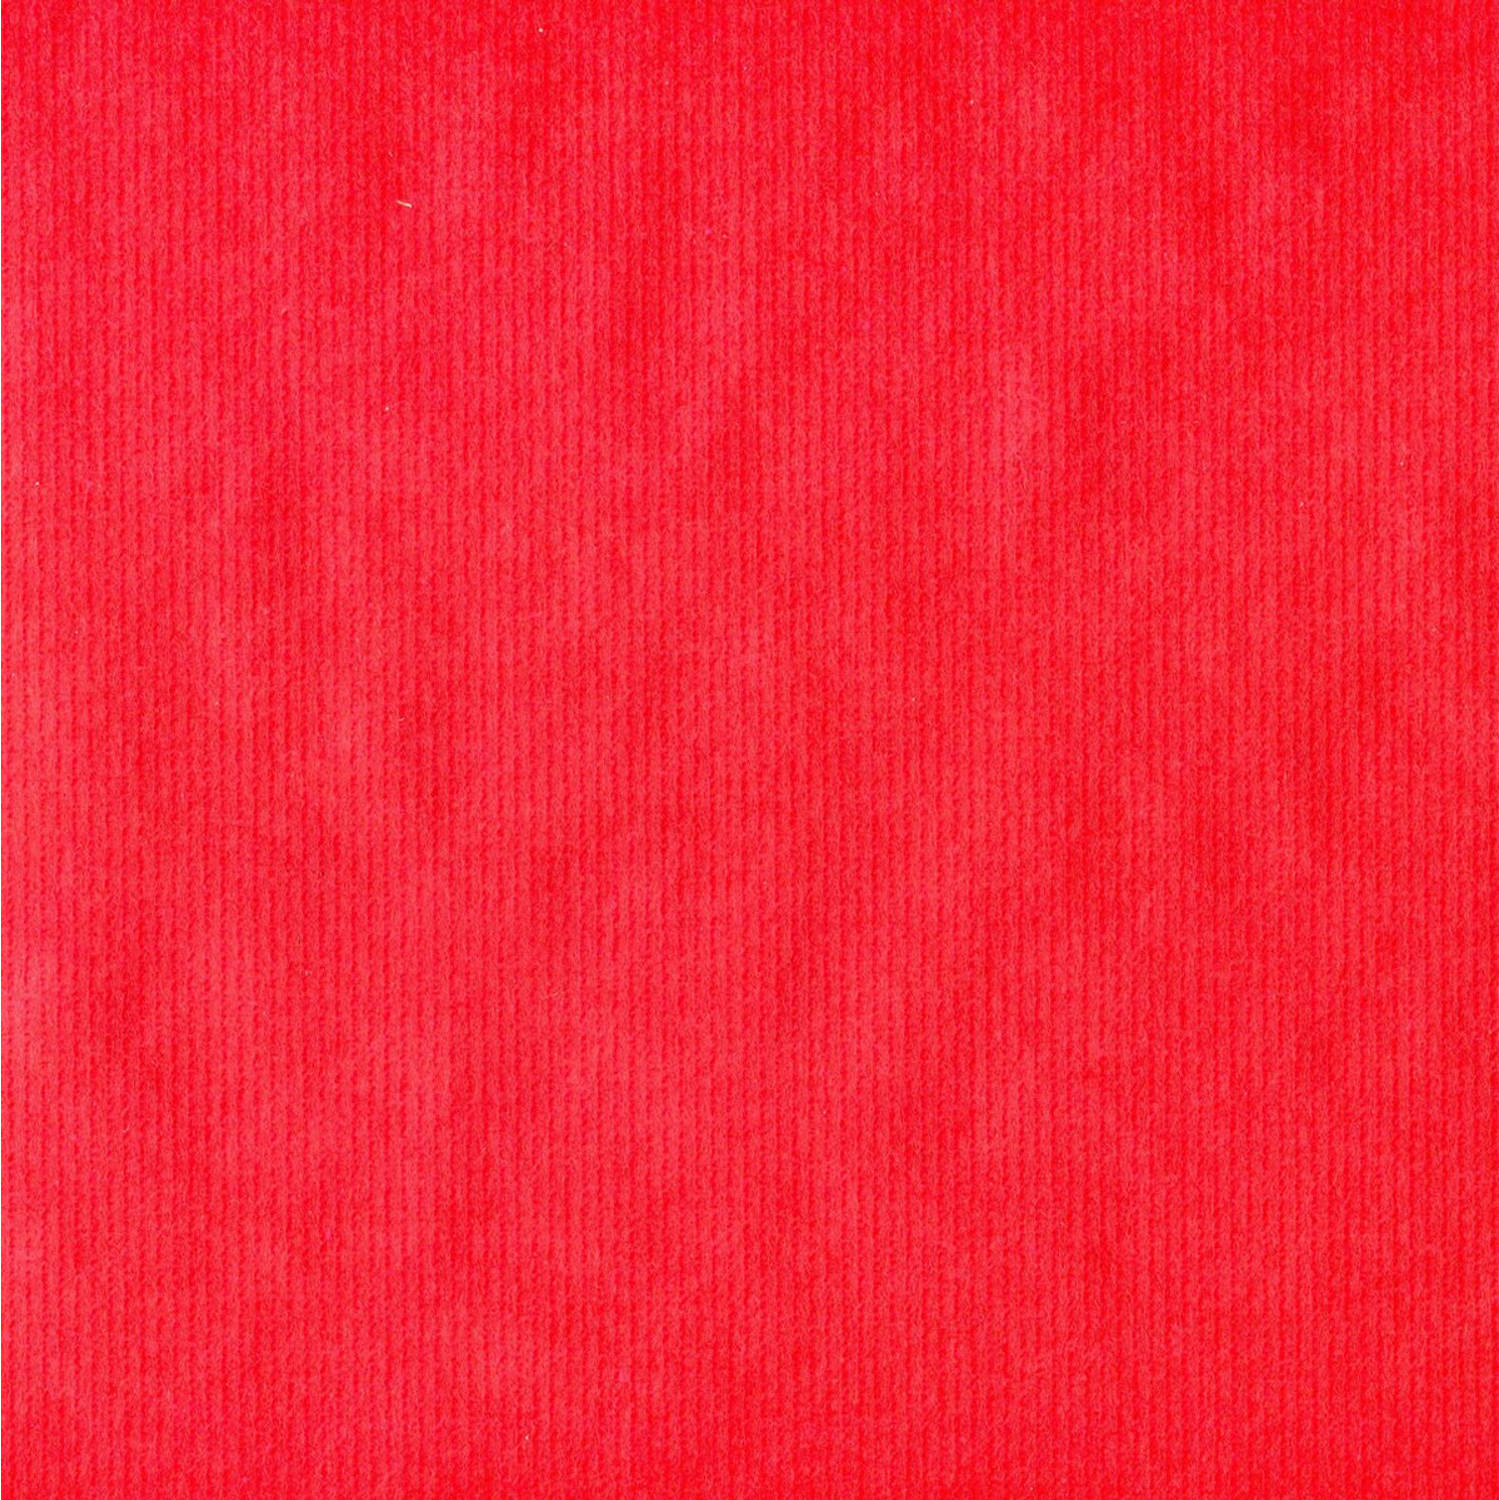 Rood kraftpapier Luxe Kerstpapier inpakpapier cadeaupapier - 500 x 70 cm - 2 rollen